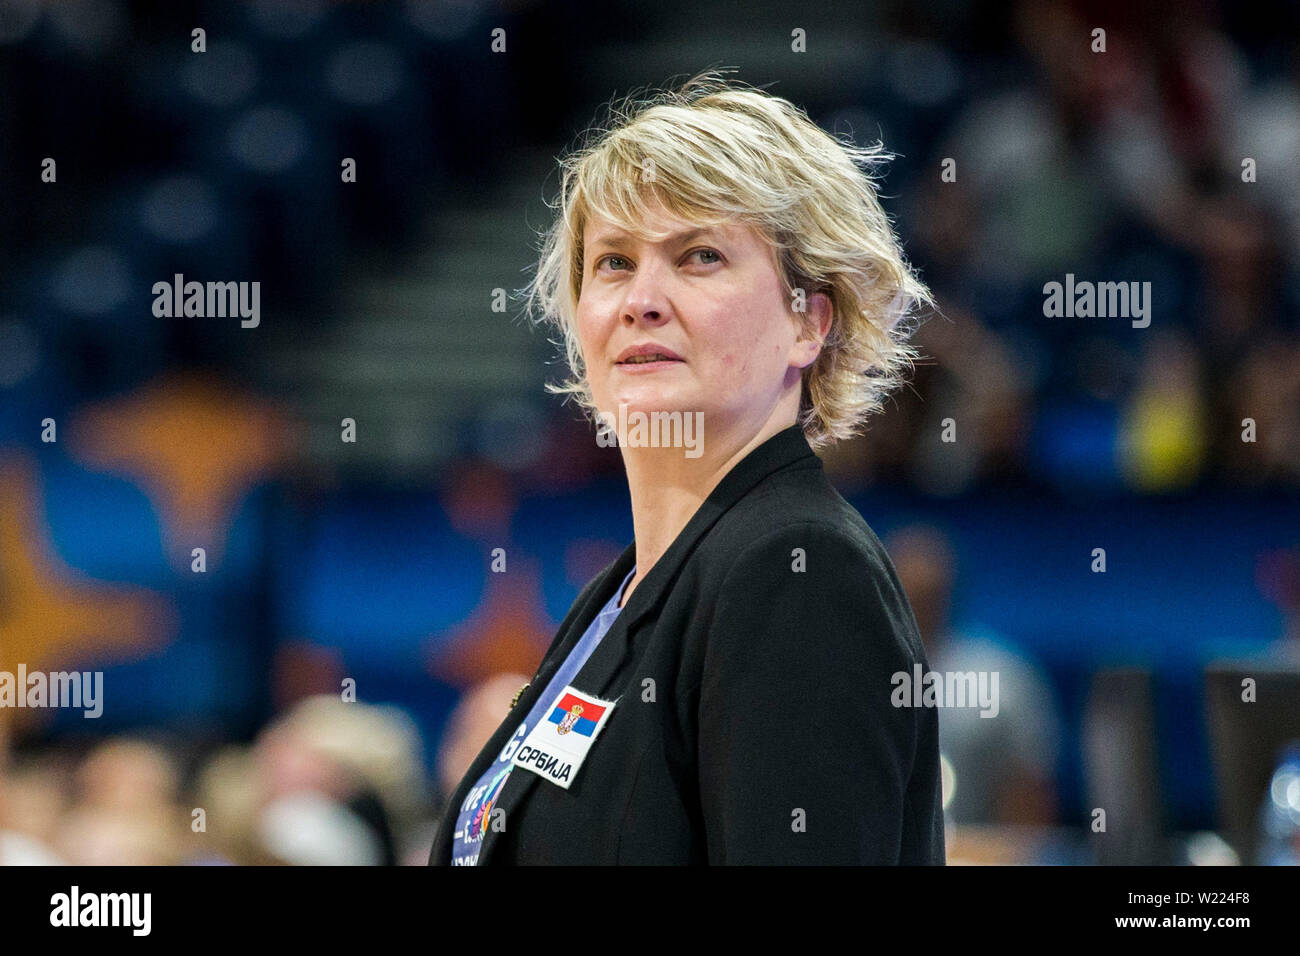 Head Coach Marina Maljkovic of SRB Stock Photo - Alamy